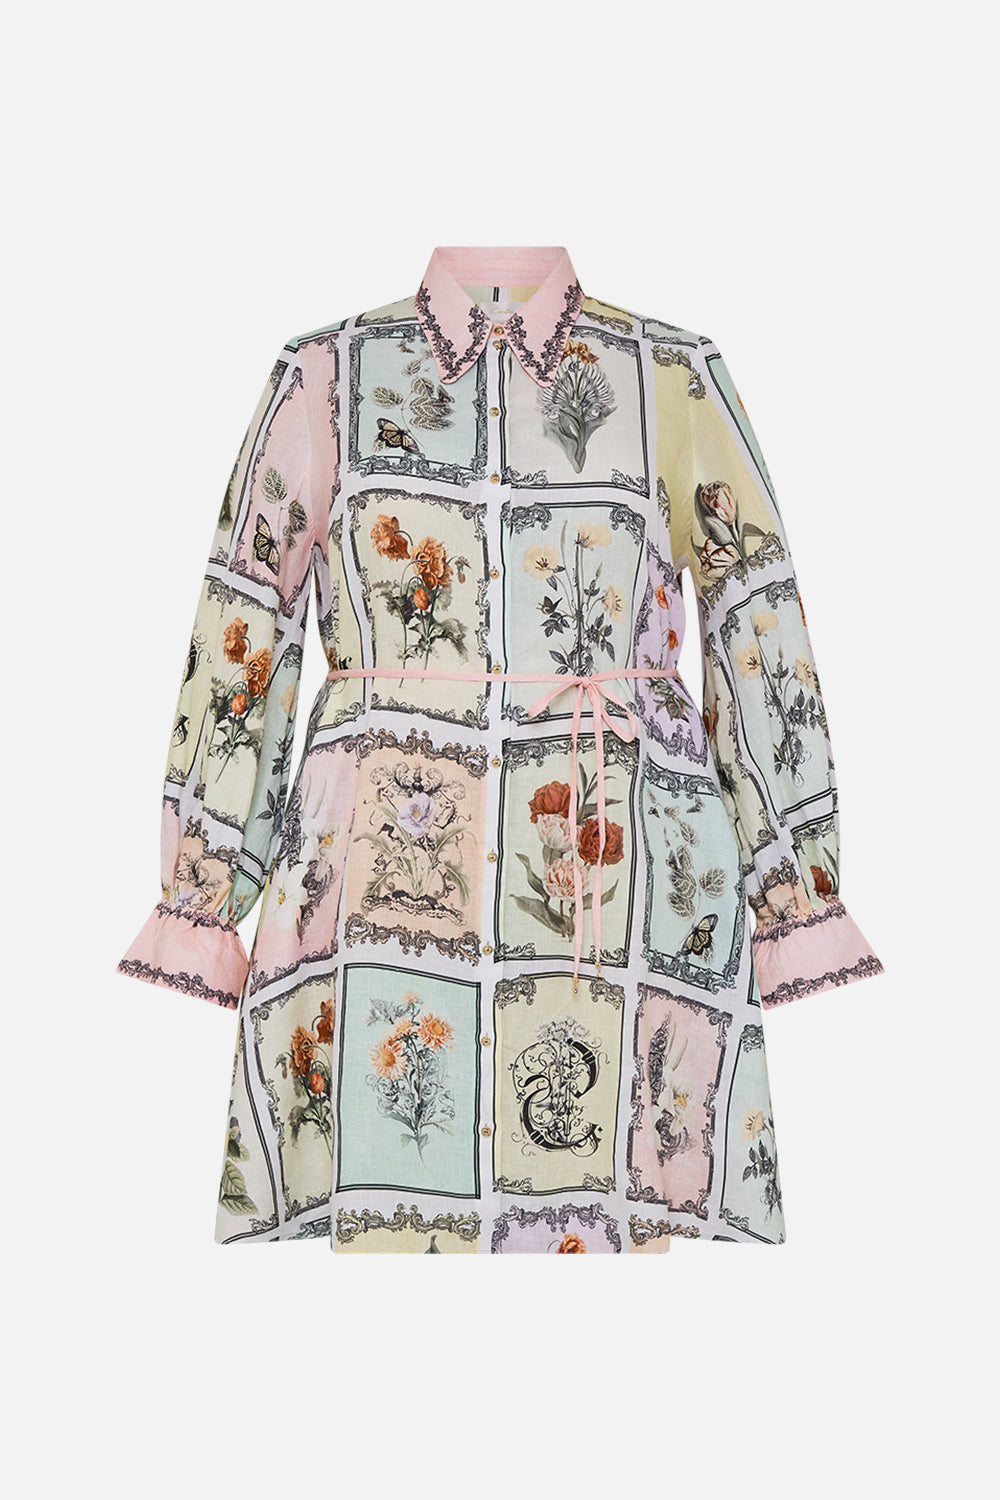 CAMILLA linen shirt dress in Long Live Letterpress print